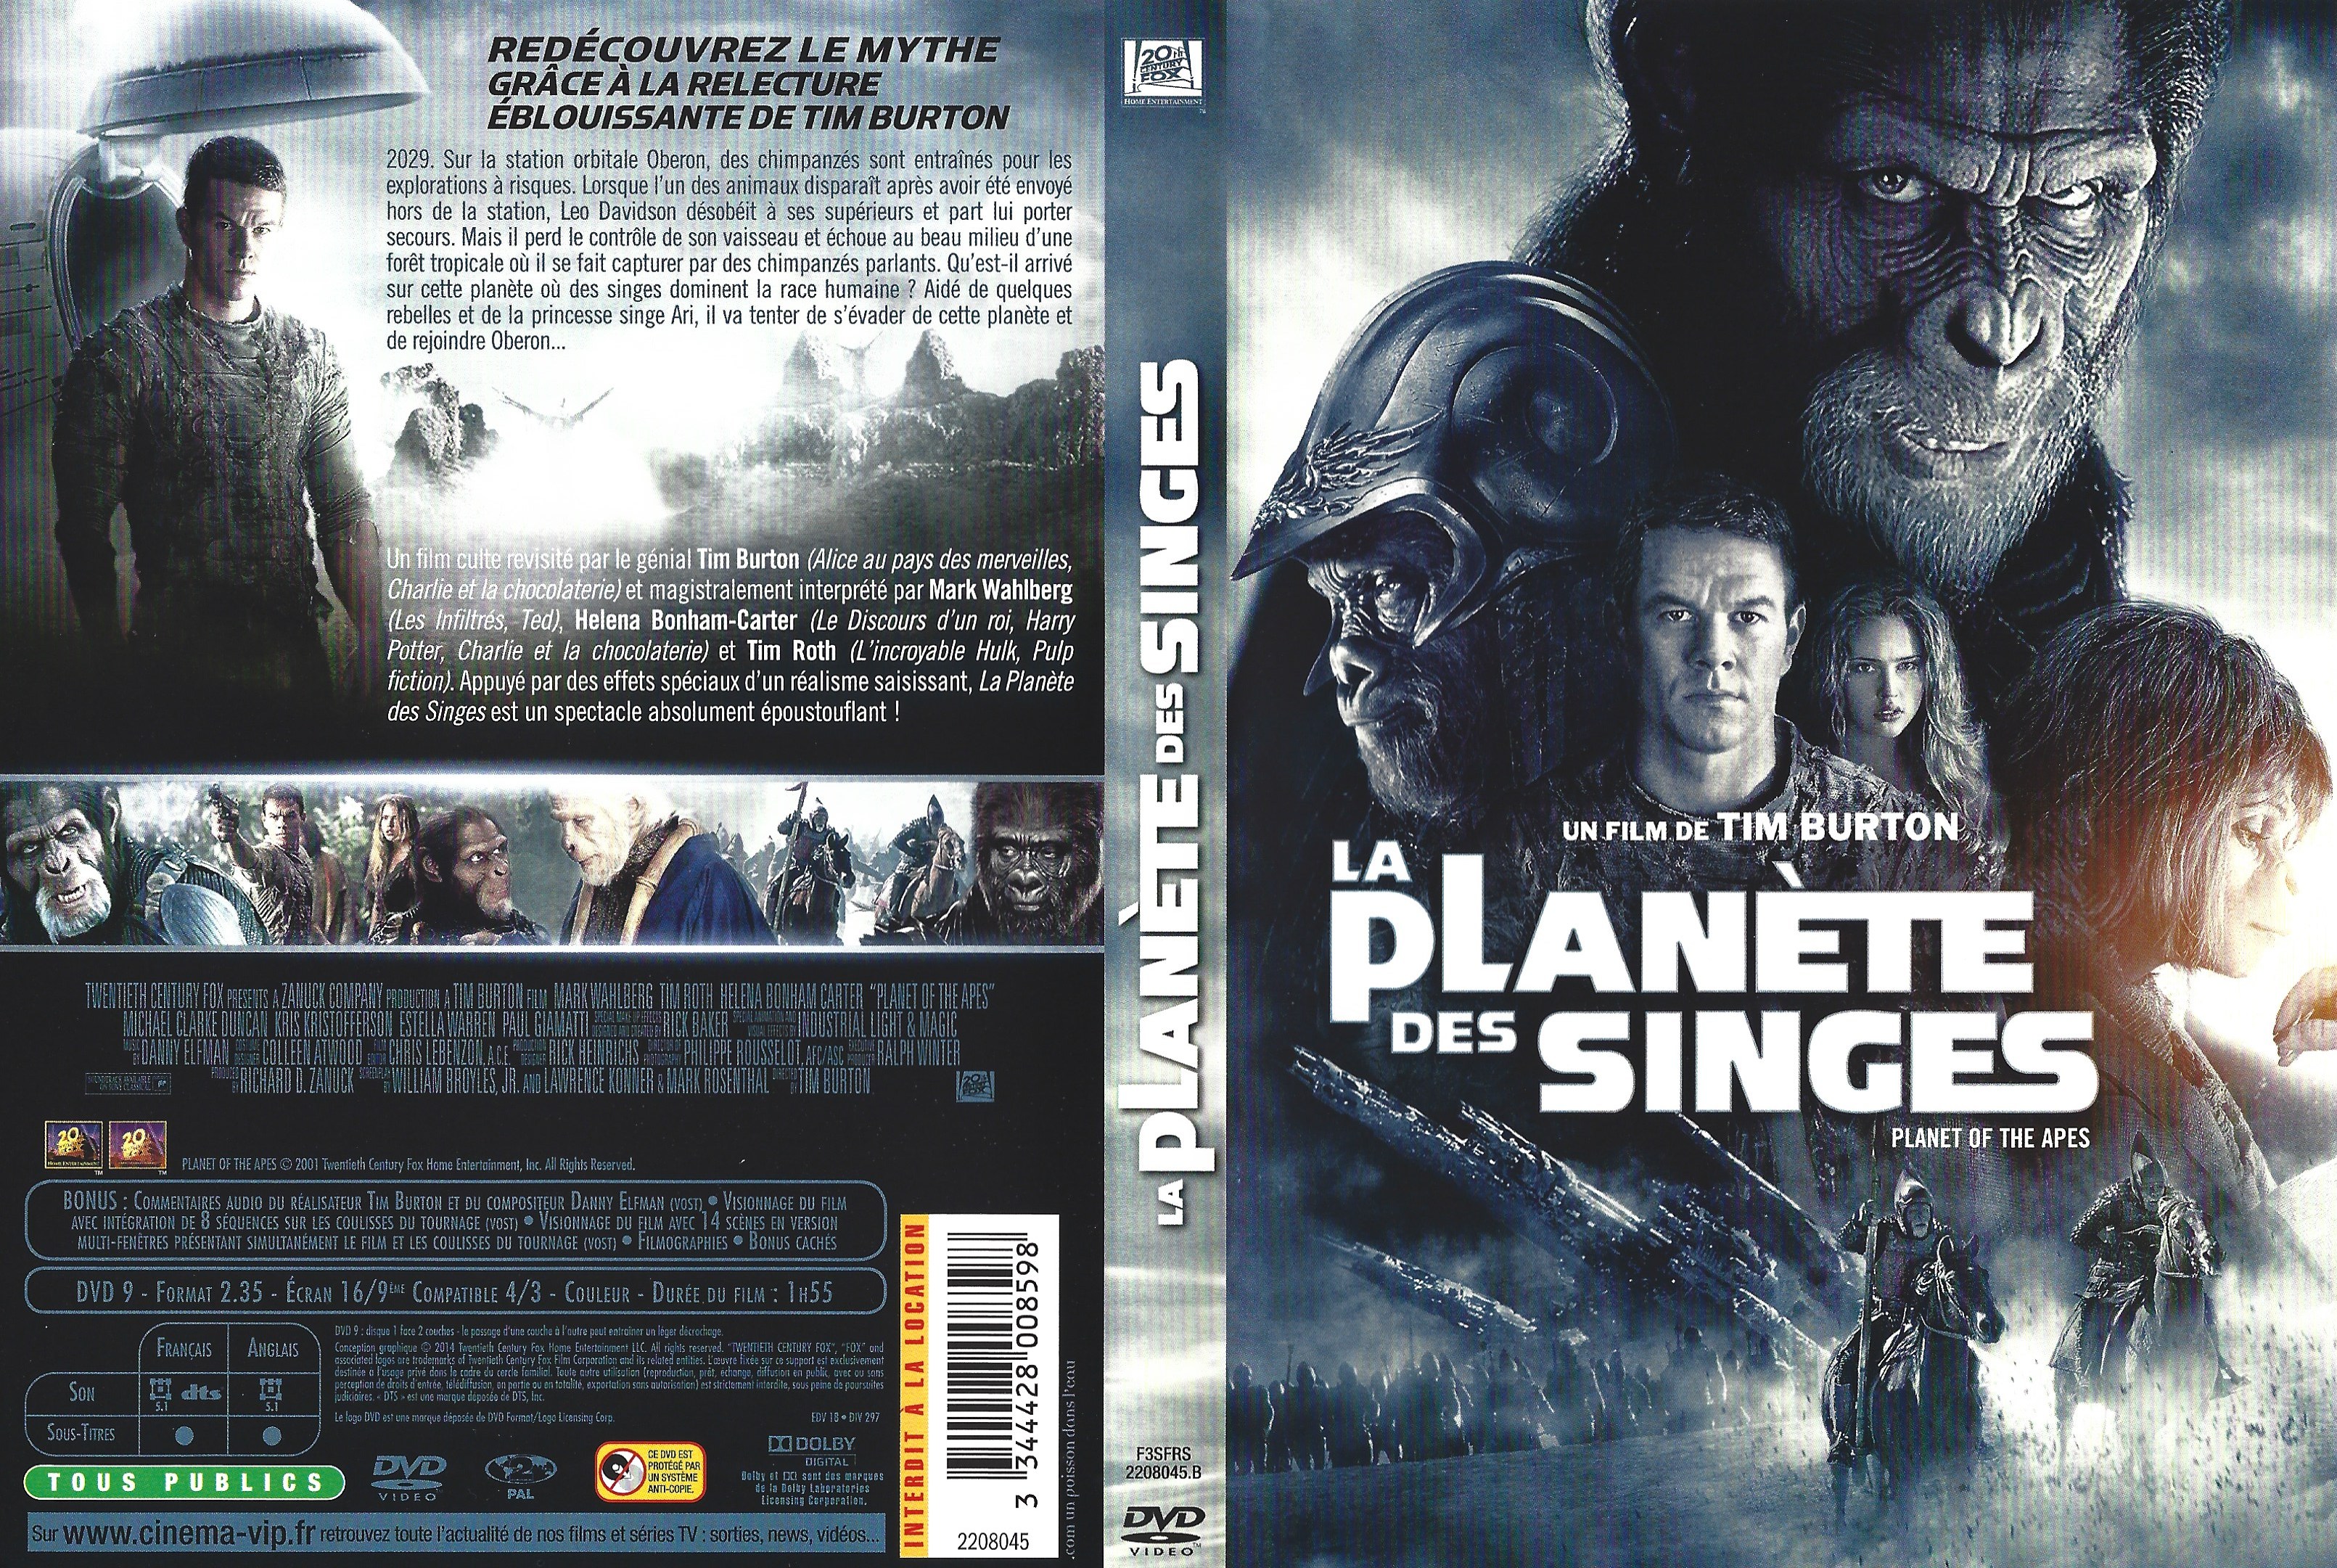 Jaquette DVD La planete des singes v4